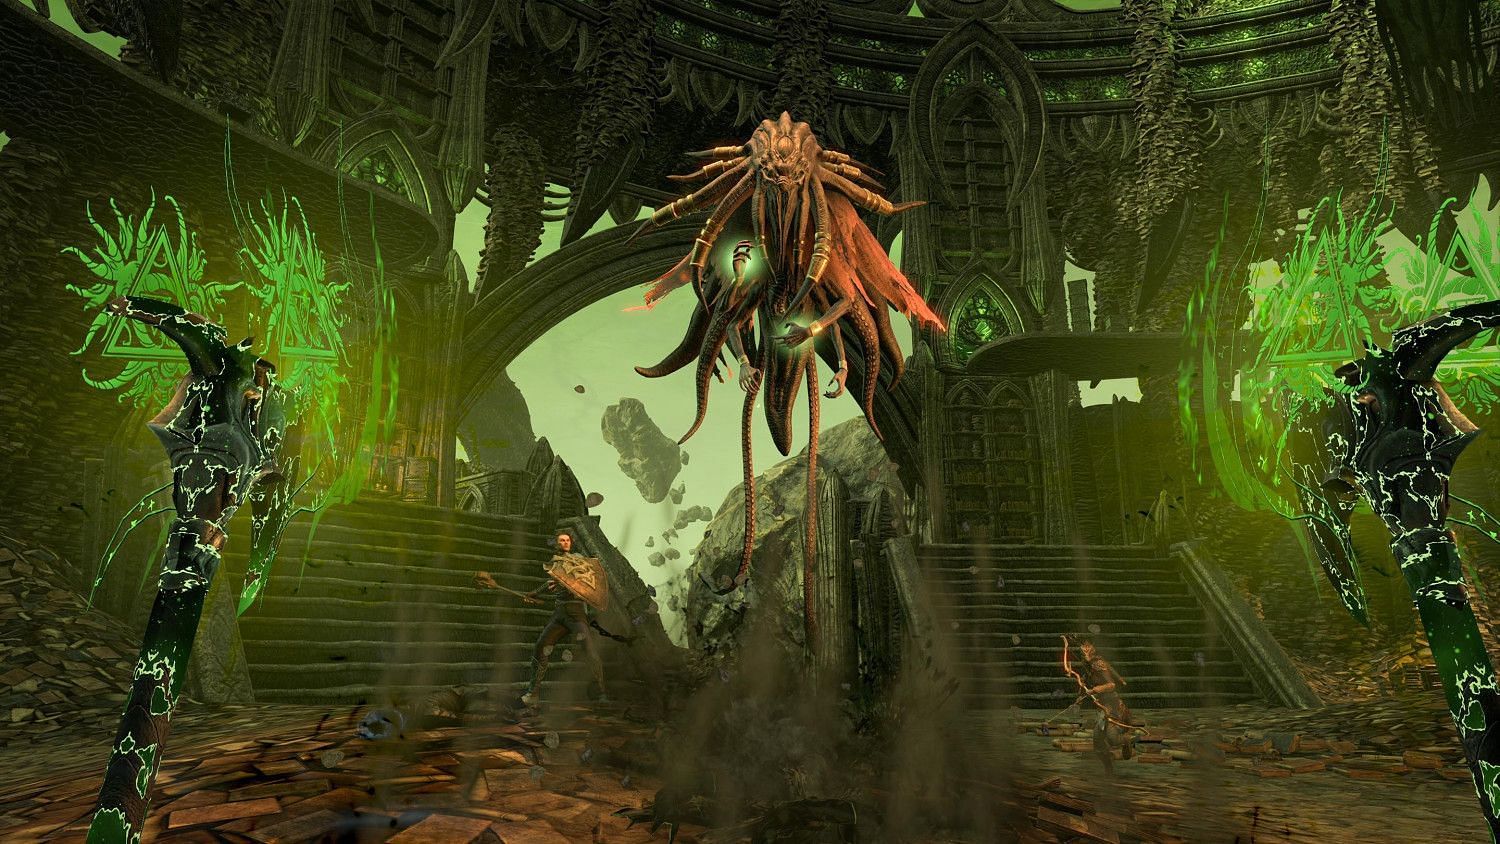 Elder Scrolls Online - Necrom (Image via Bethesda)